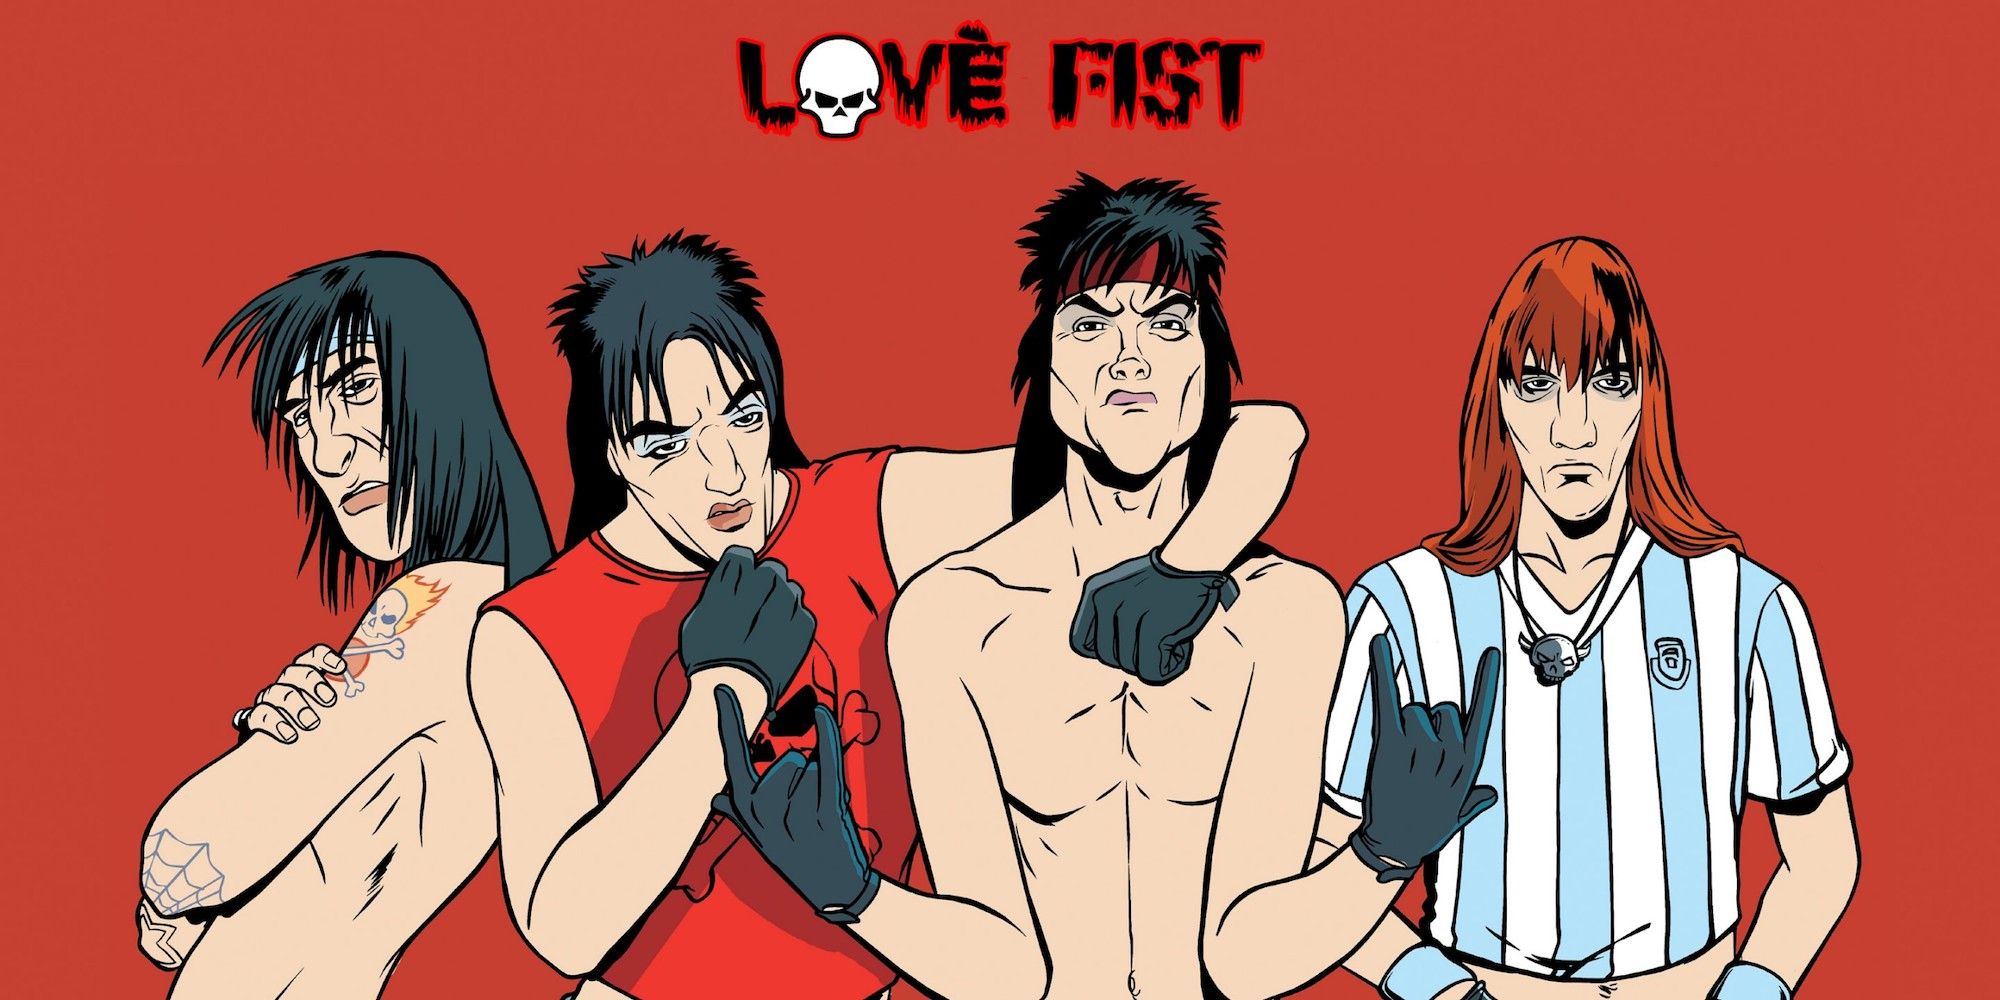 Arte de Jezz Torrent e sua banda, Love Fist, no GTA Vice City.